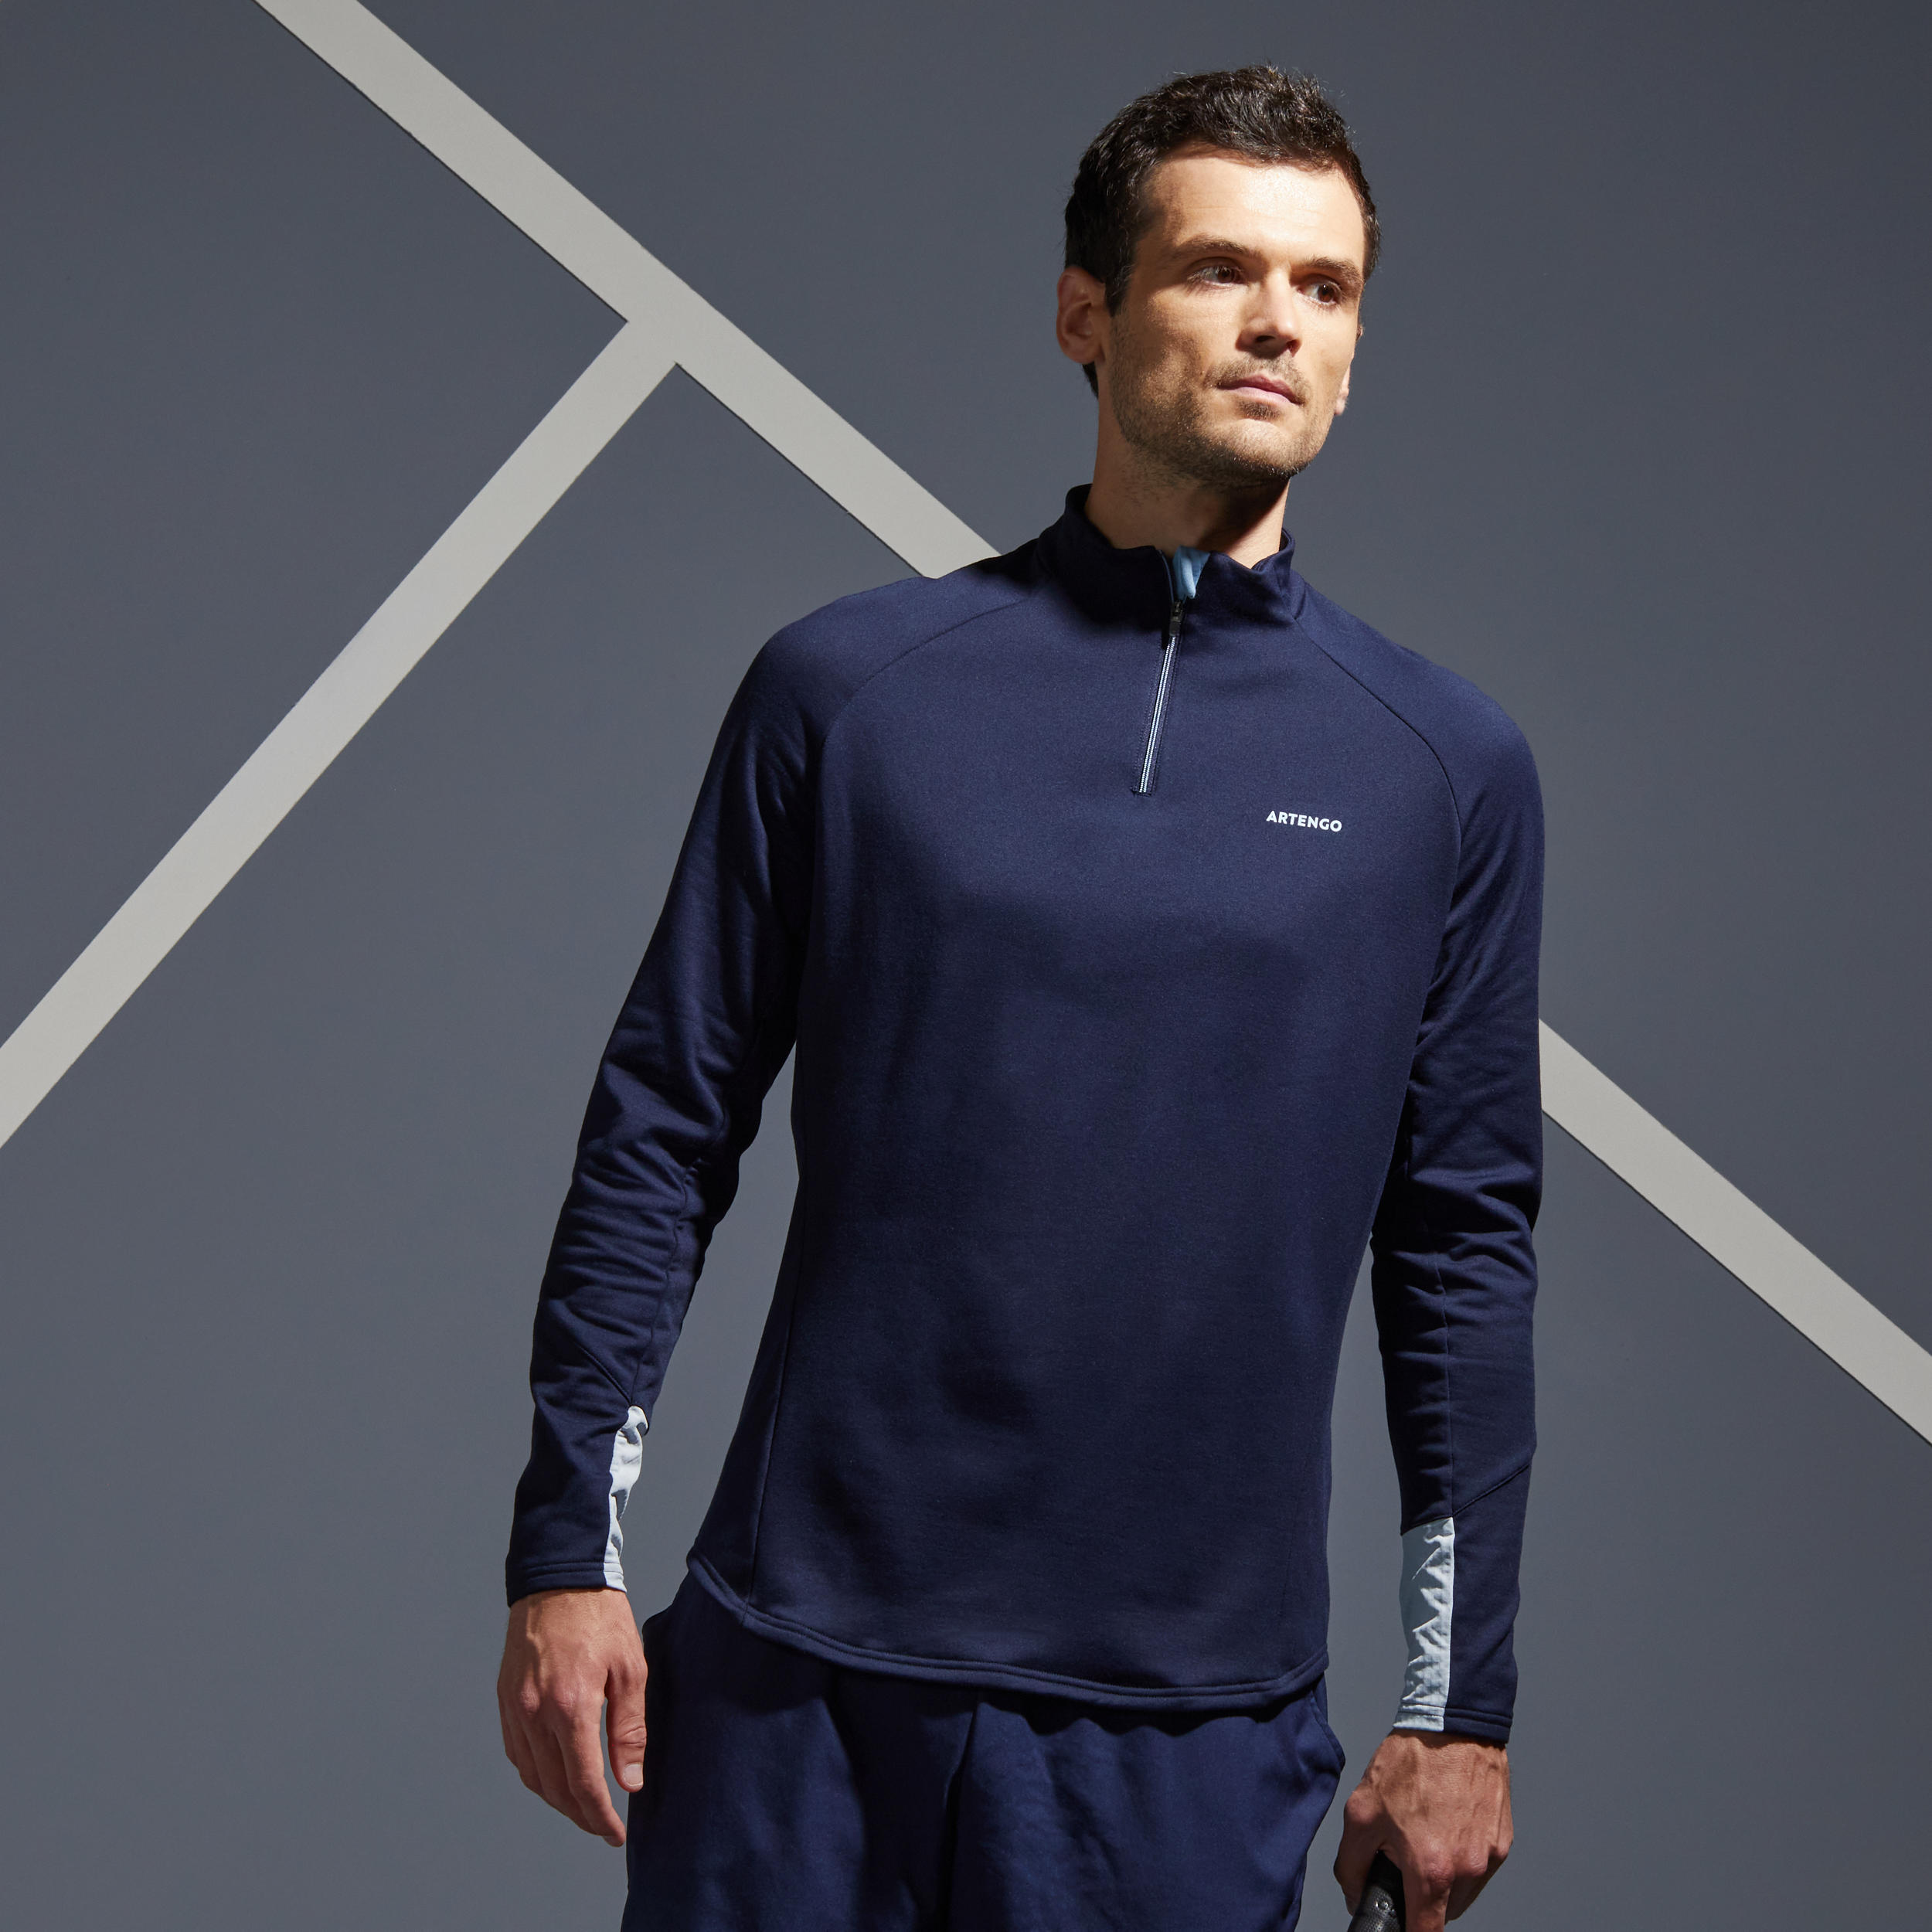 Men's Half-Zip Long-Sleeved Thermal Tennis Sweatshirt - Navy Blue 1/8